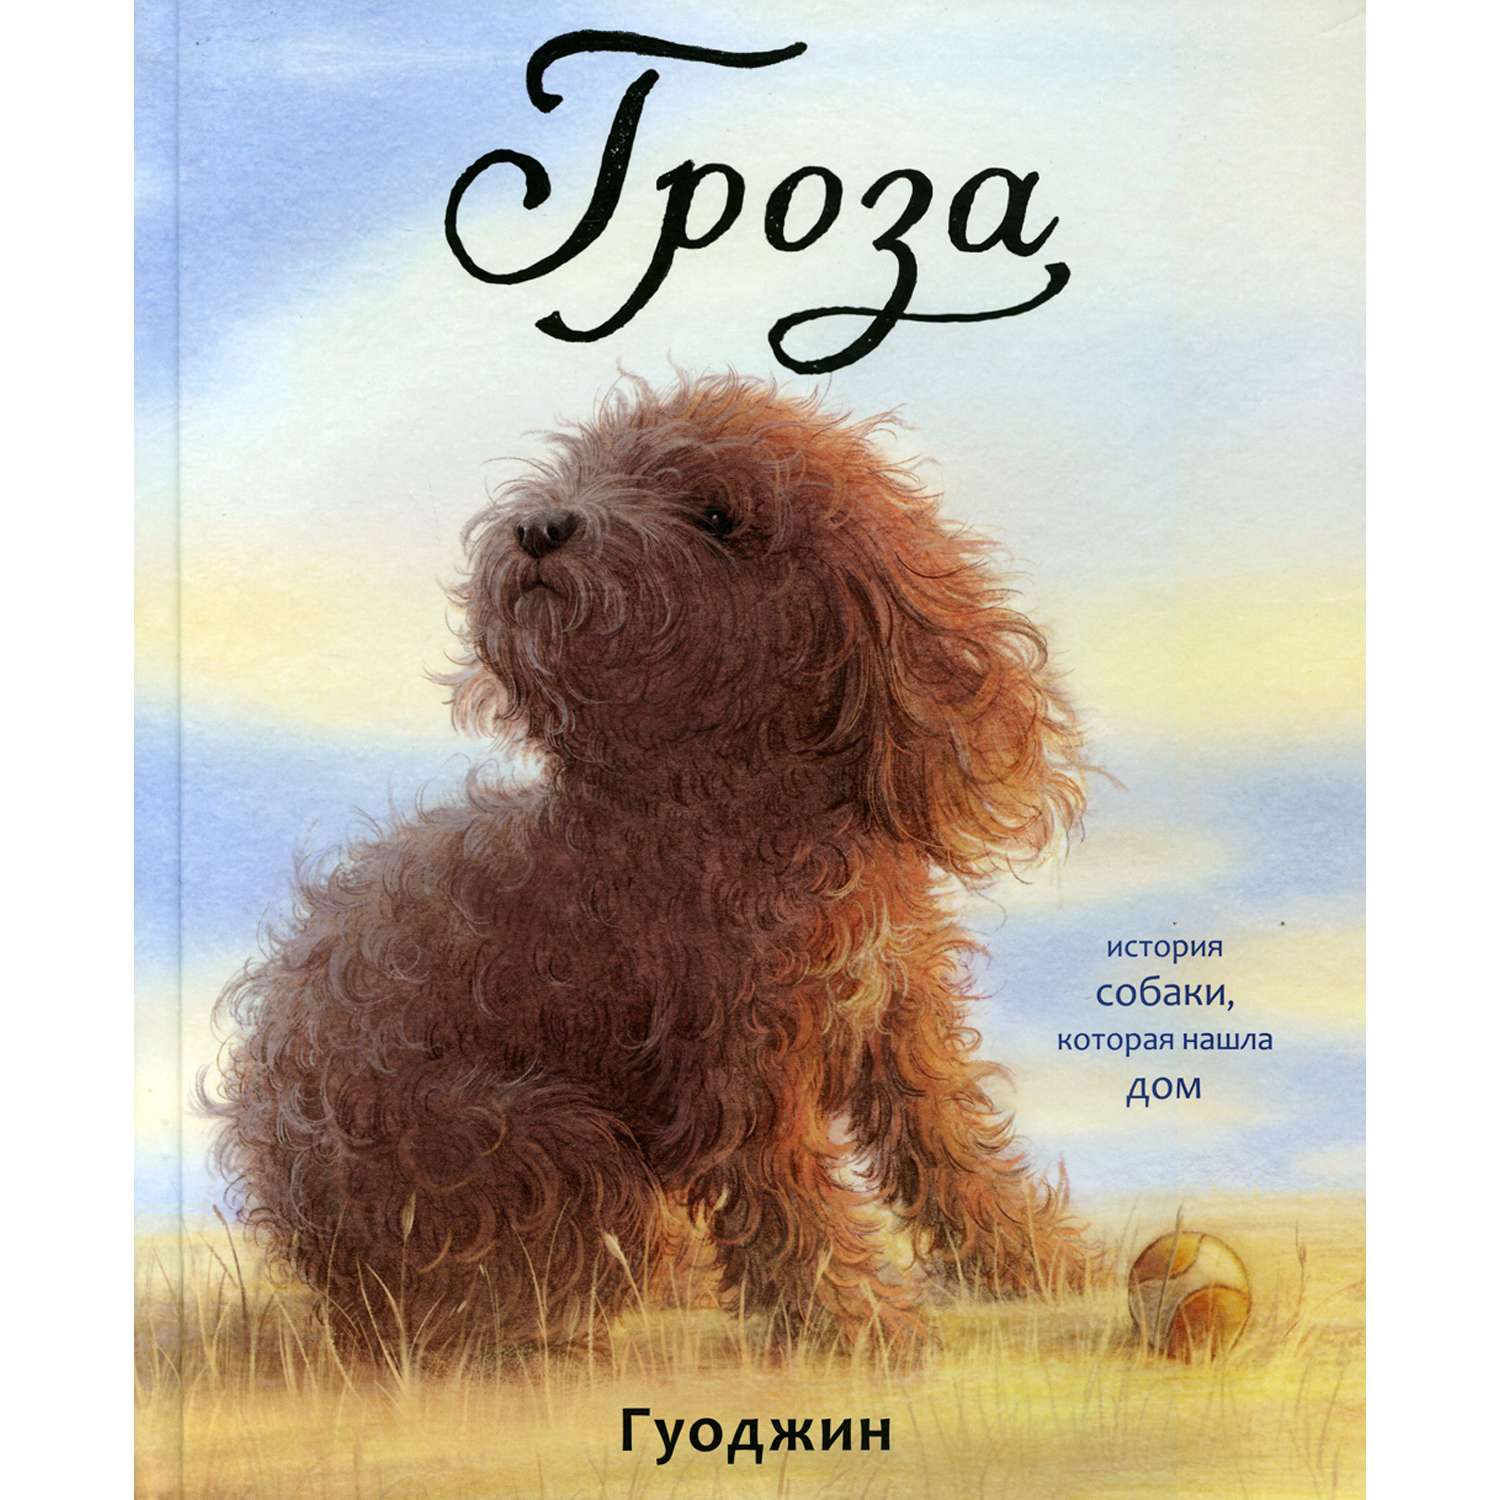 Книга Поляндрия Гроза: История собаки которая нашла дом - фото 1